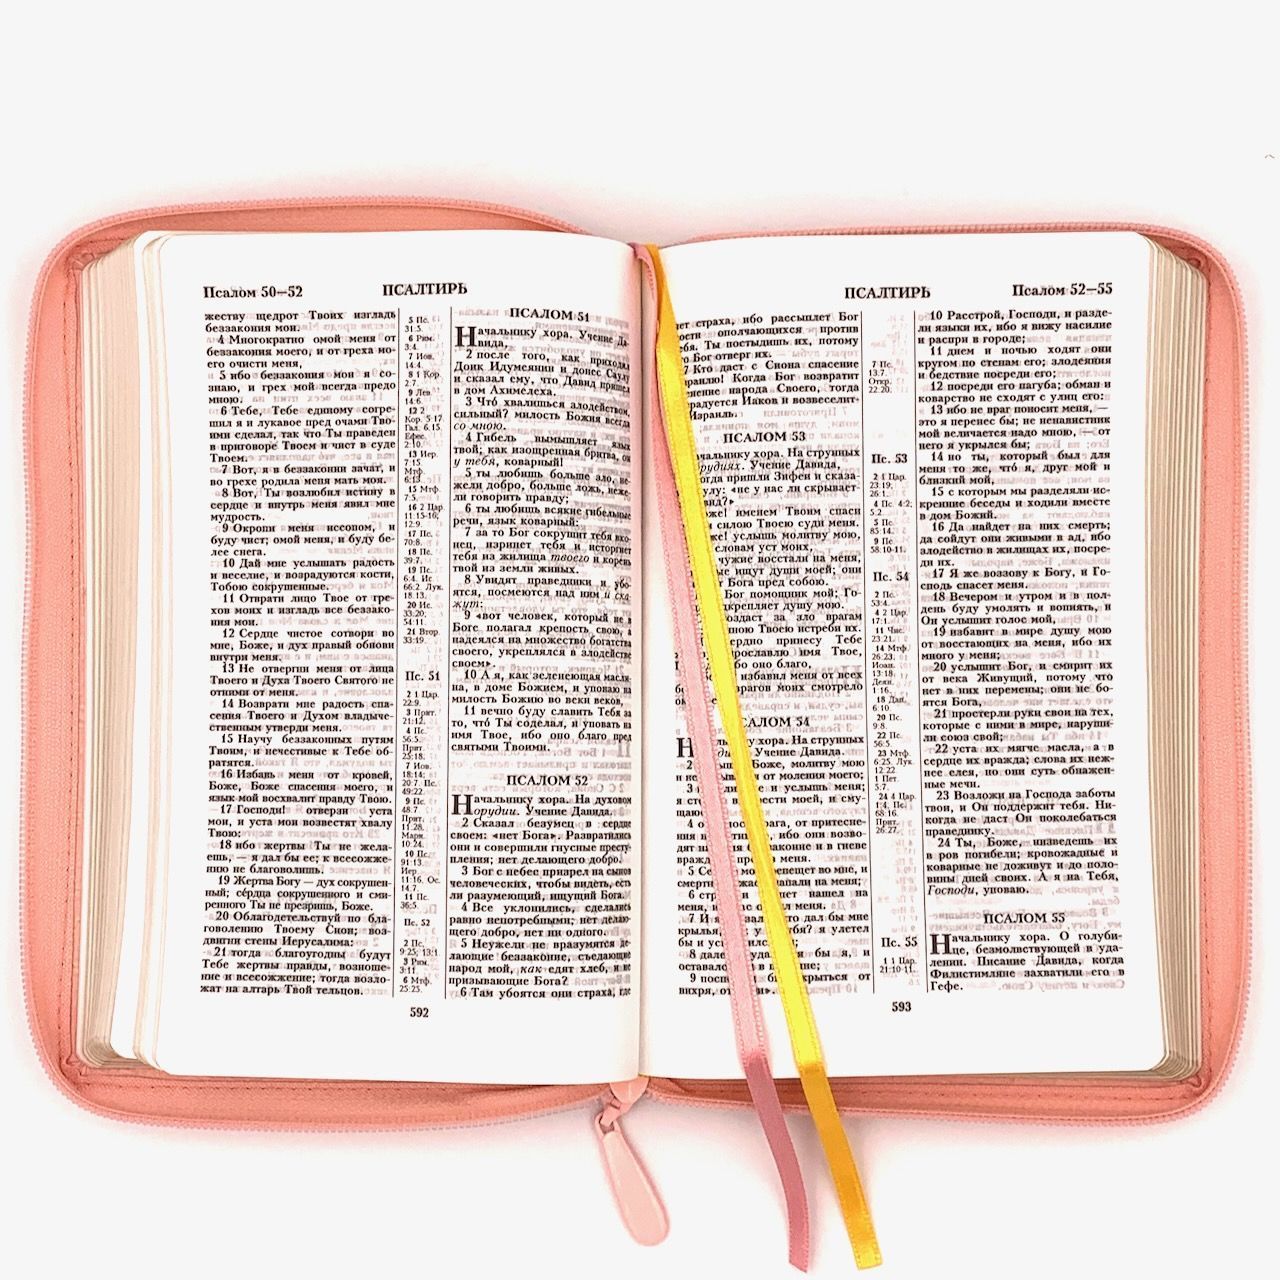 Библия 055z код I1b дизайн "золотое сердце", переплет из искусственной кожи на молнии, цвет розовый, средний формат, 143*220 мм,